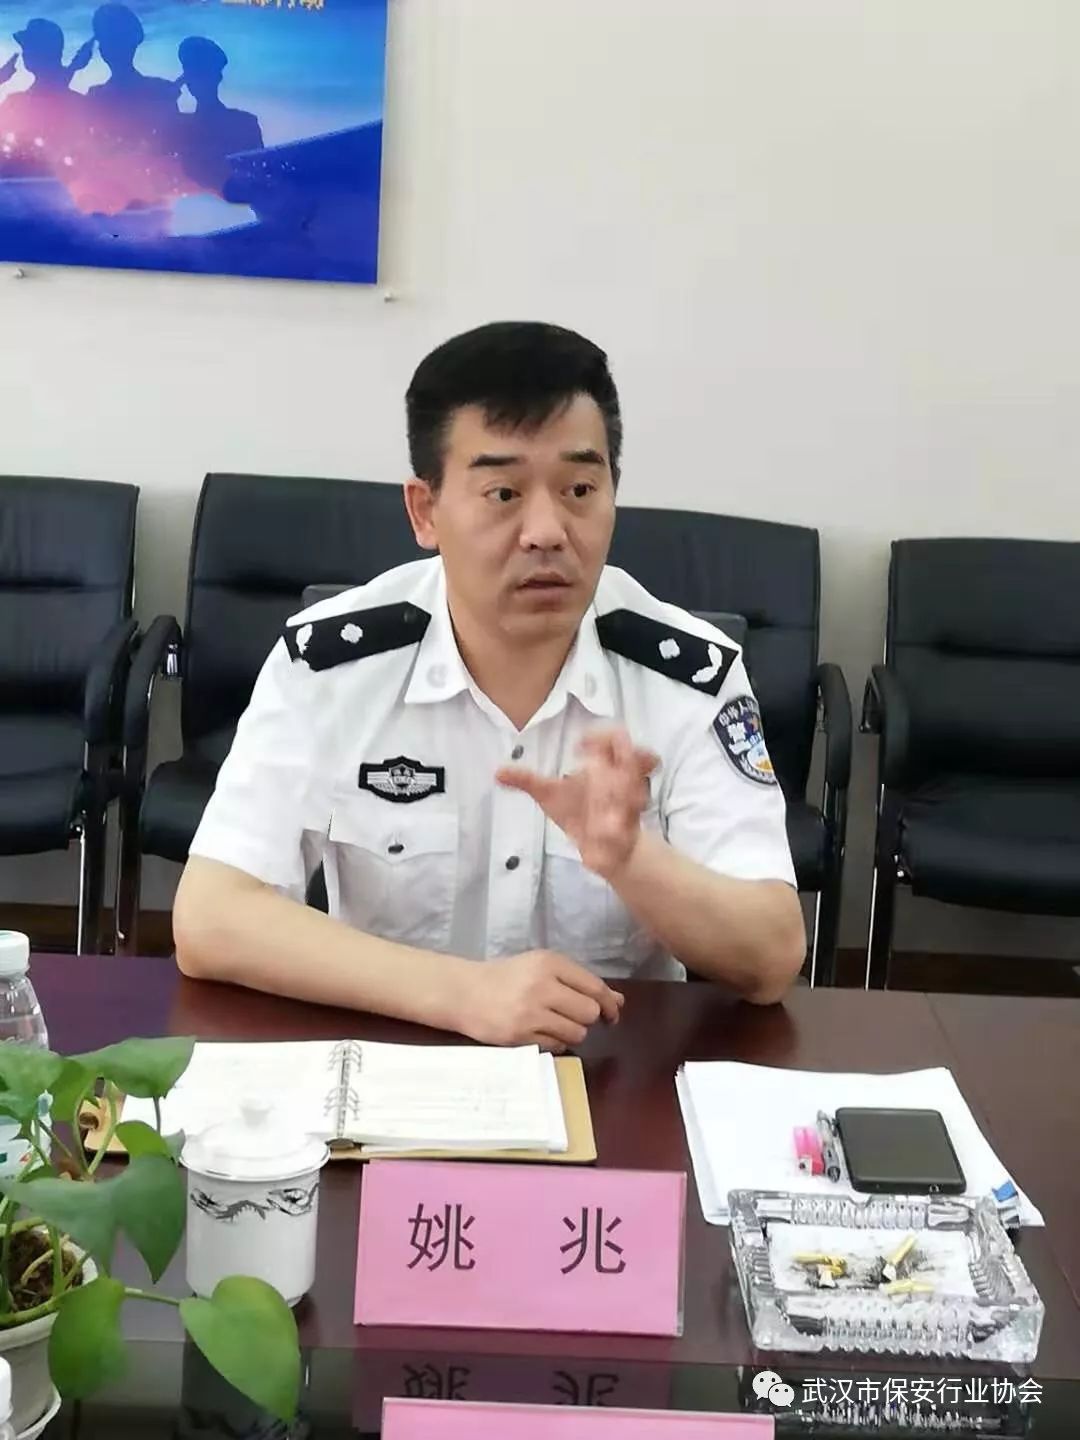 湖北省公安厅厅内保总队,武汉市公安局治安管理局领导一行到武汉市